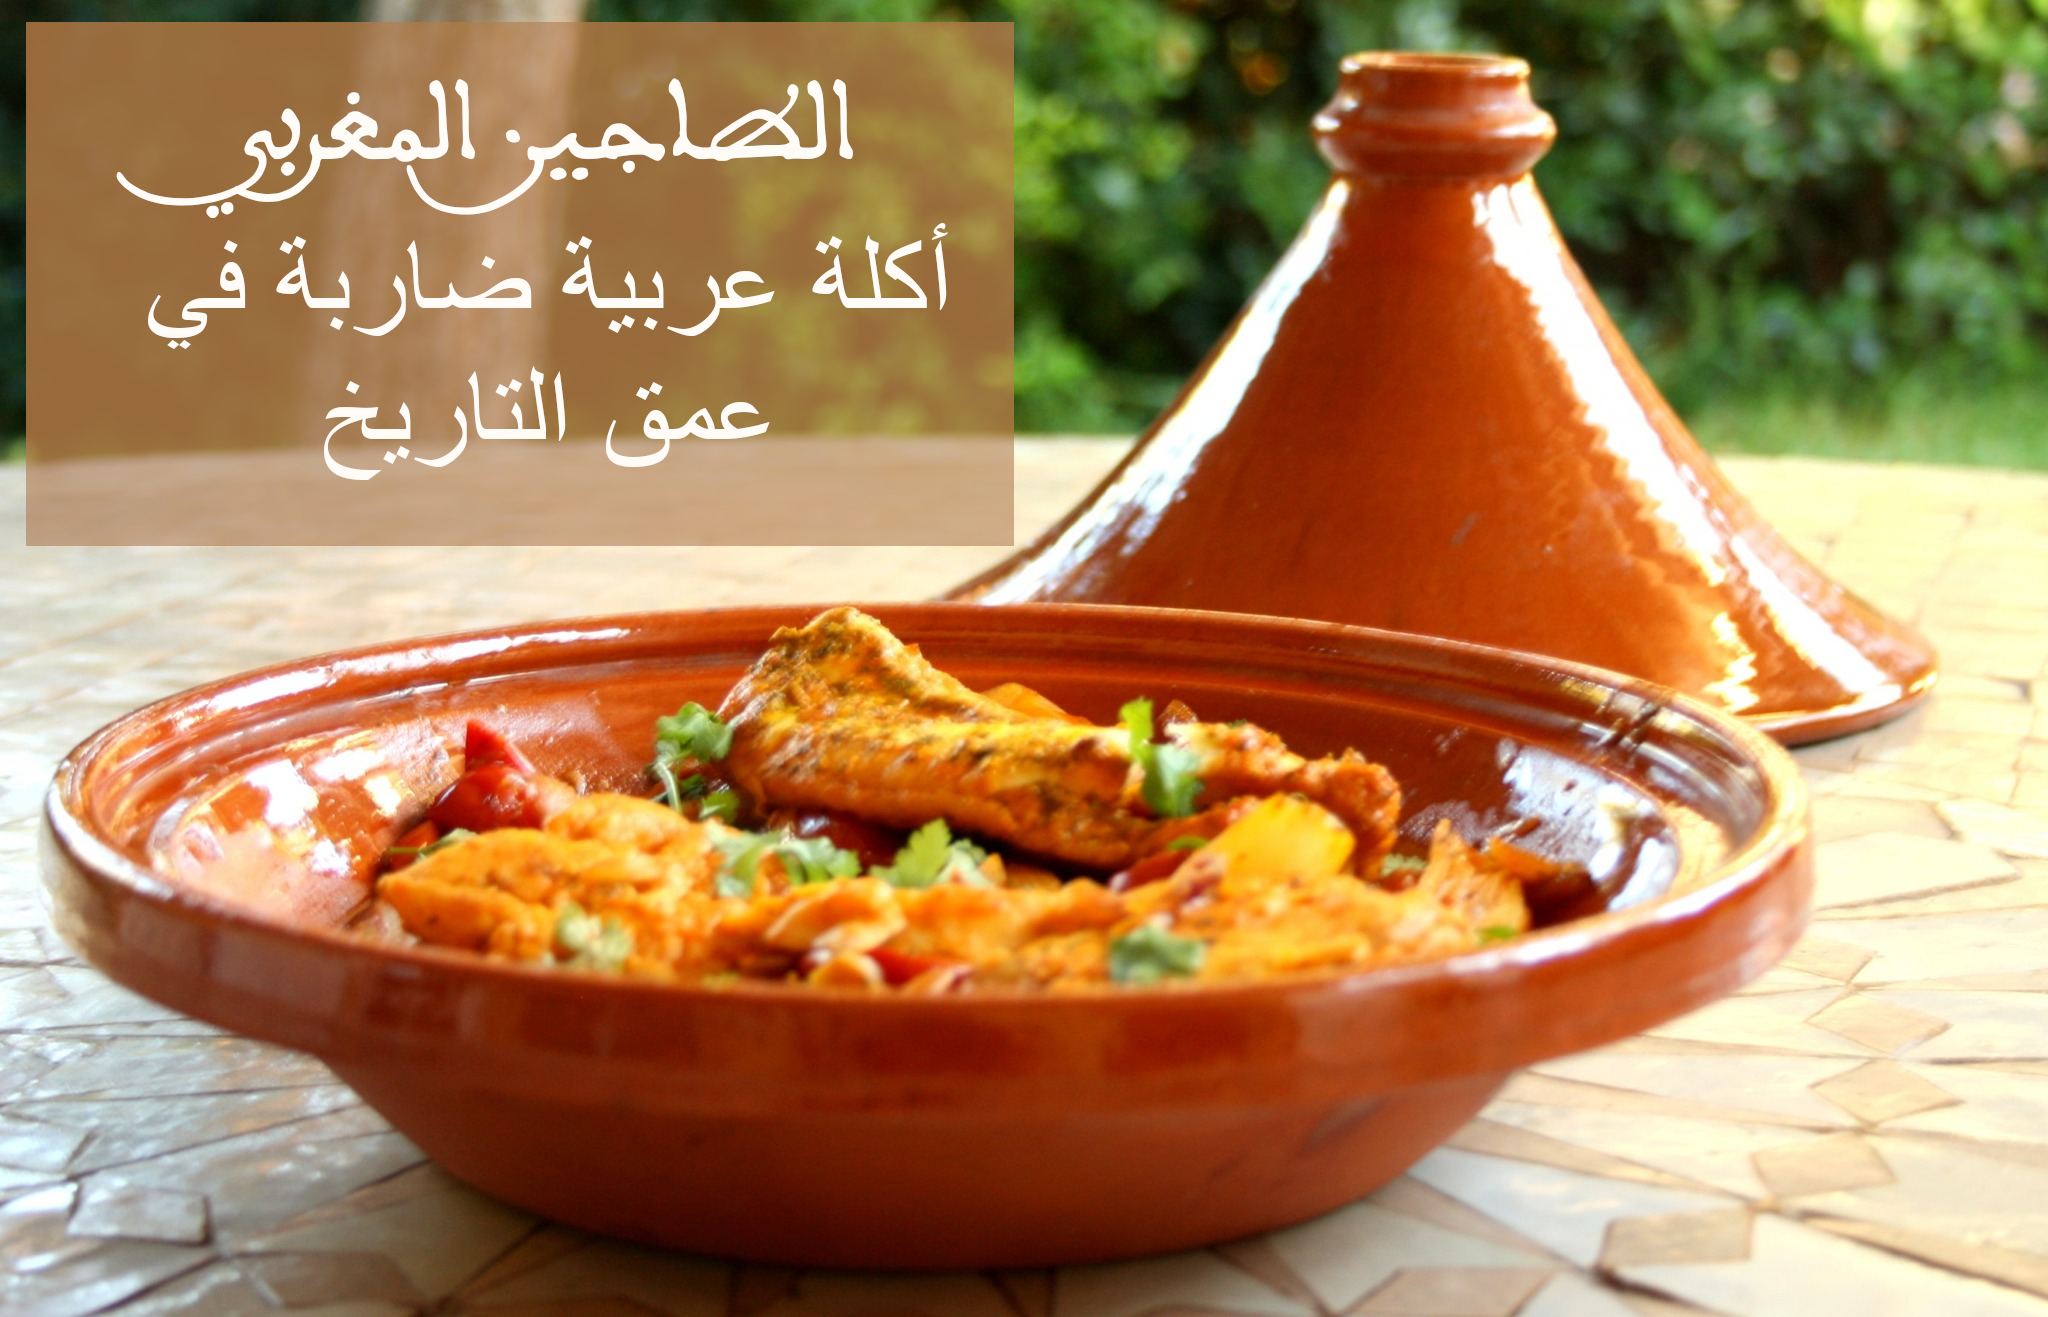 الطاجين المغربي، أكلة عربية ضاربة في عمق التاريخ tagin-morocco-arabic